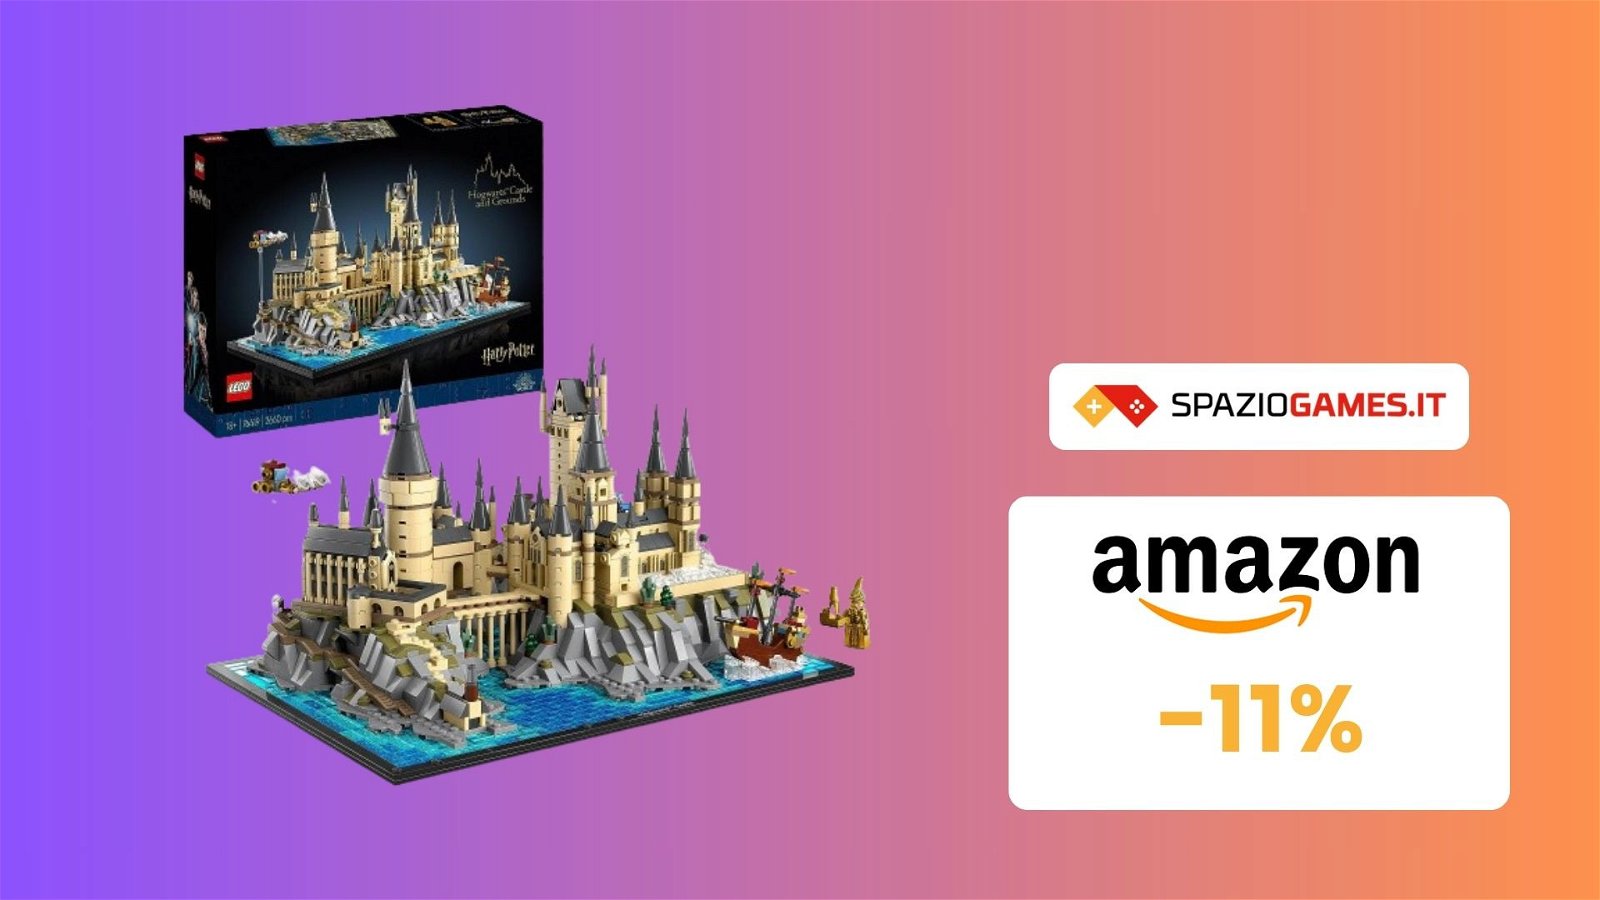 Porta la magia a casa tua con il set LEGO Castello di Hogwarts, ora in OFFERTA a 151€!